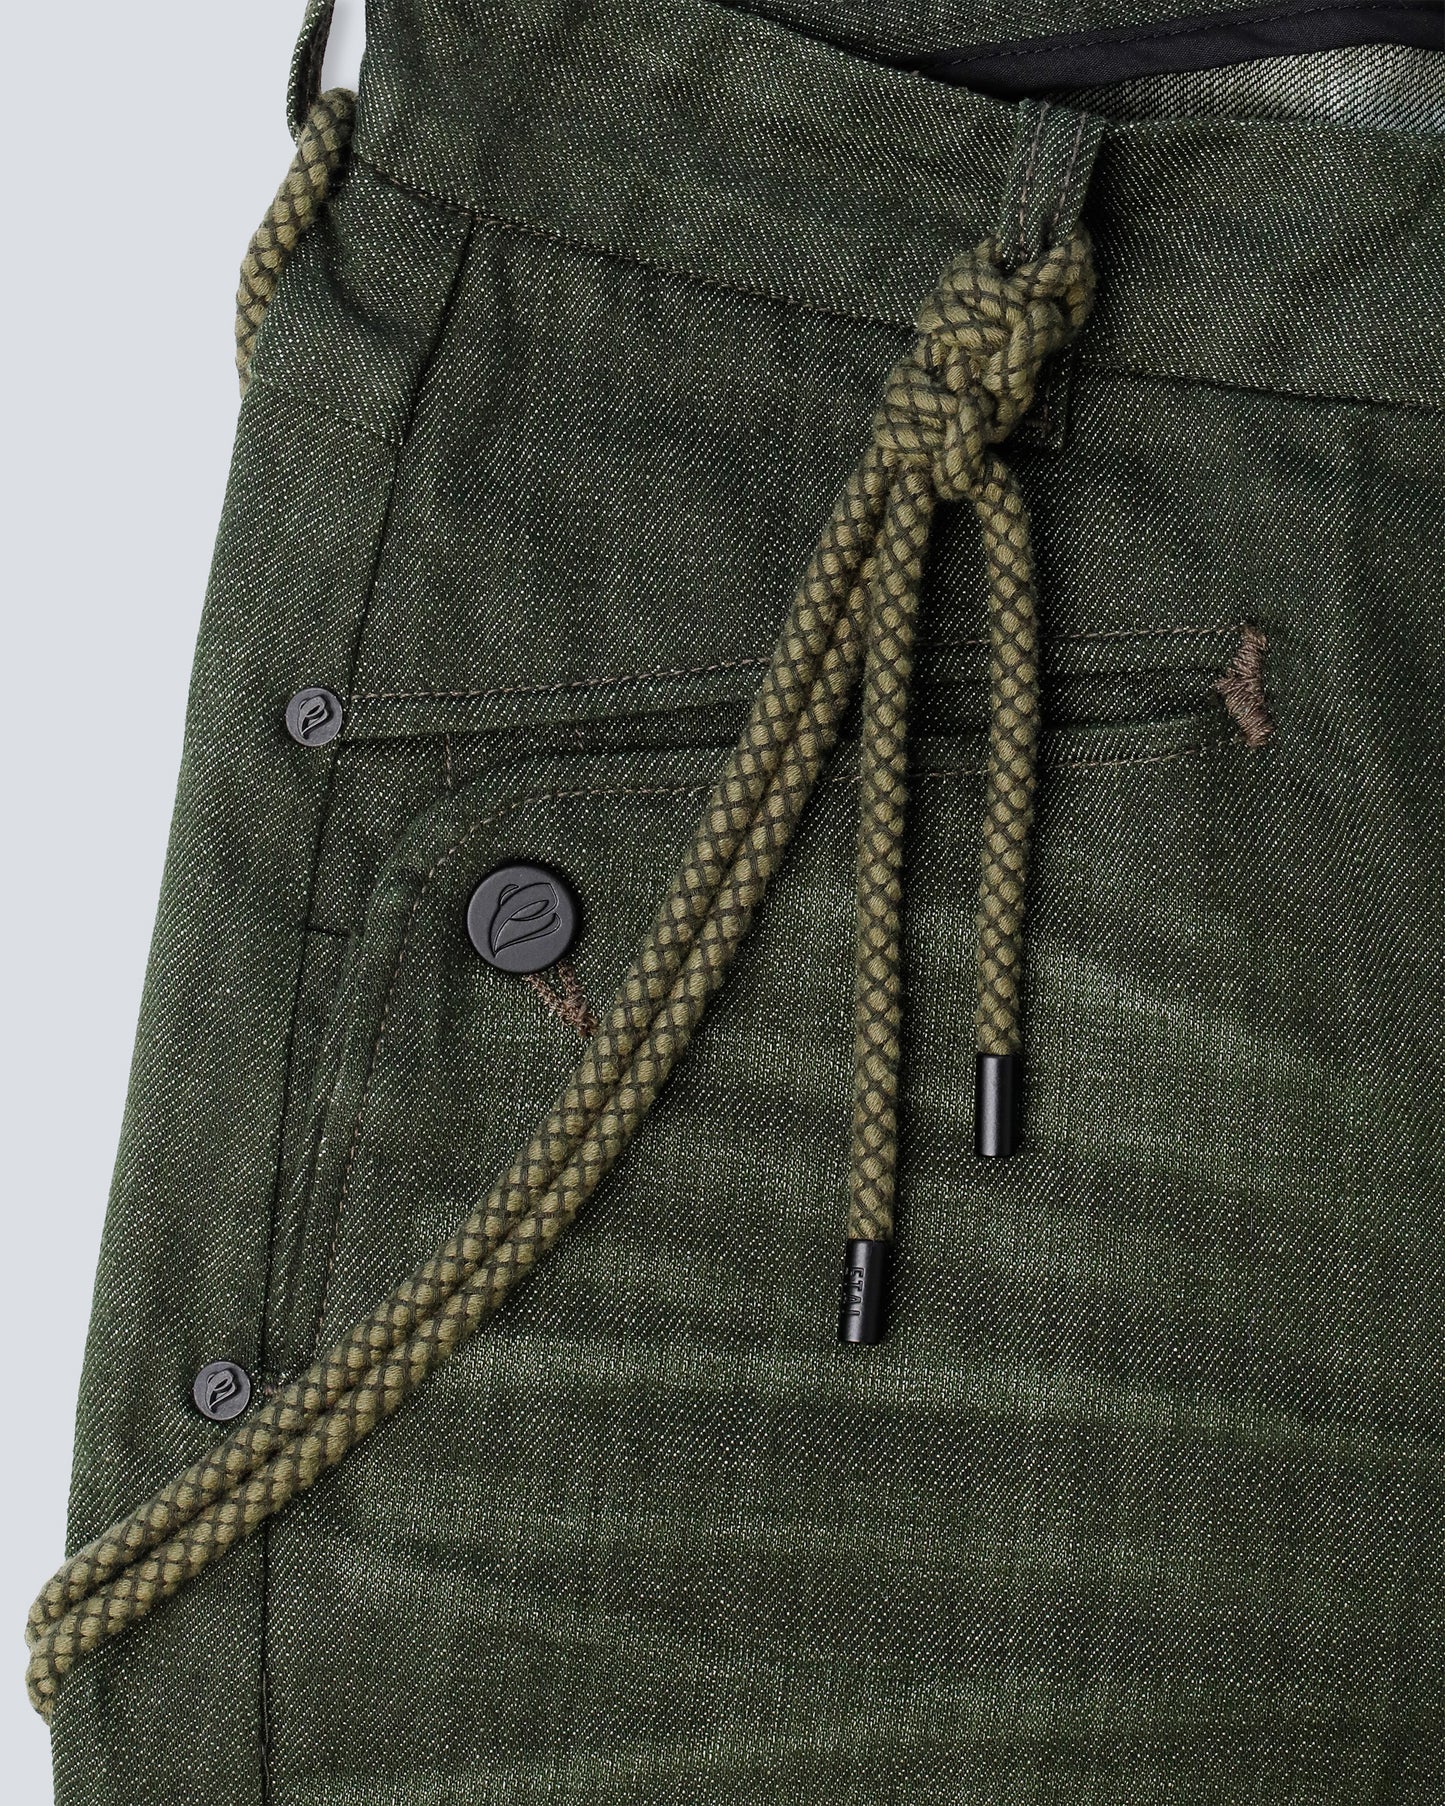 Olive Green Curved Leg 6-Pocket Jeans